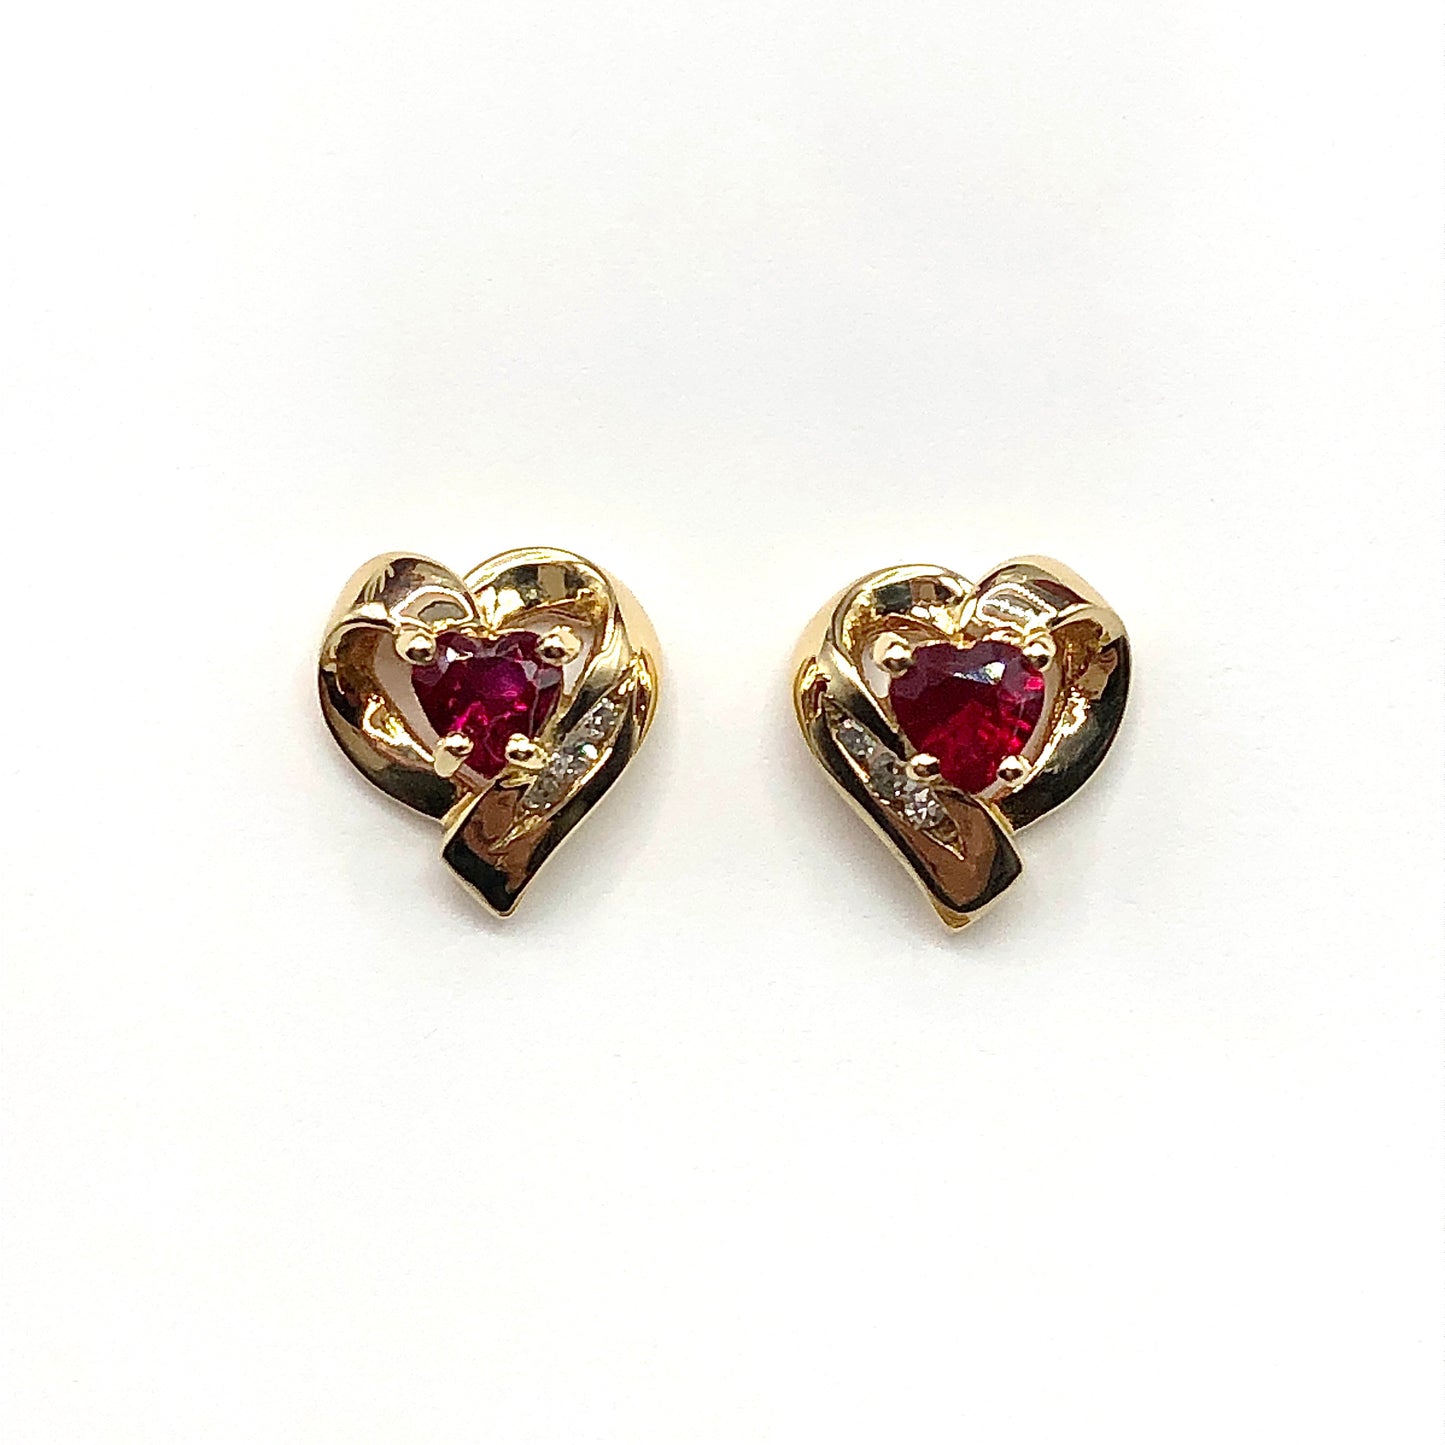 Earrings Womens 10k Gold Ruby & Diamond Looping Heart Earrings - Love an Anytime Gift for Her